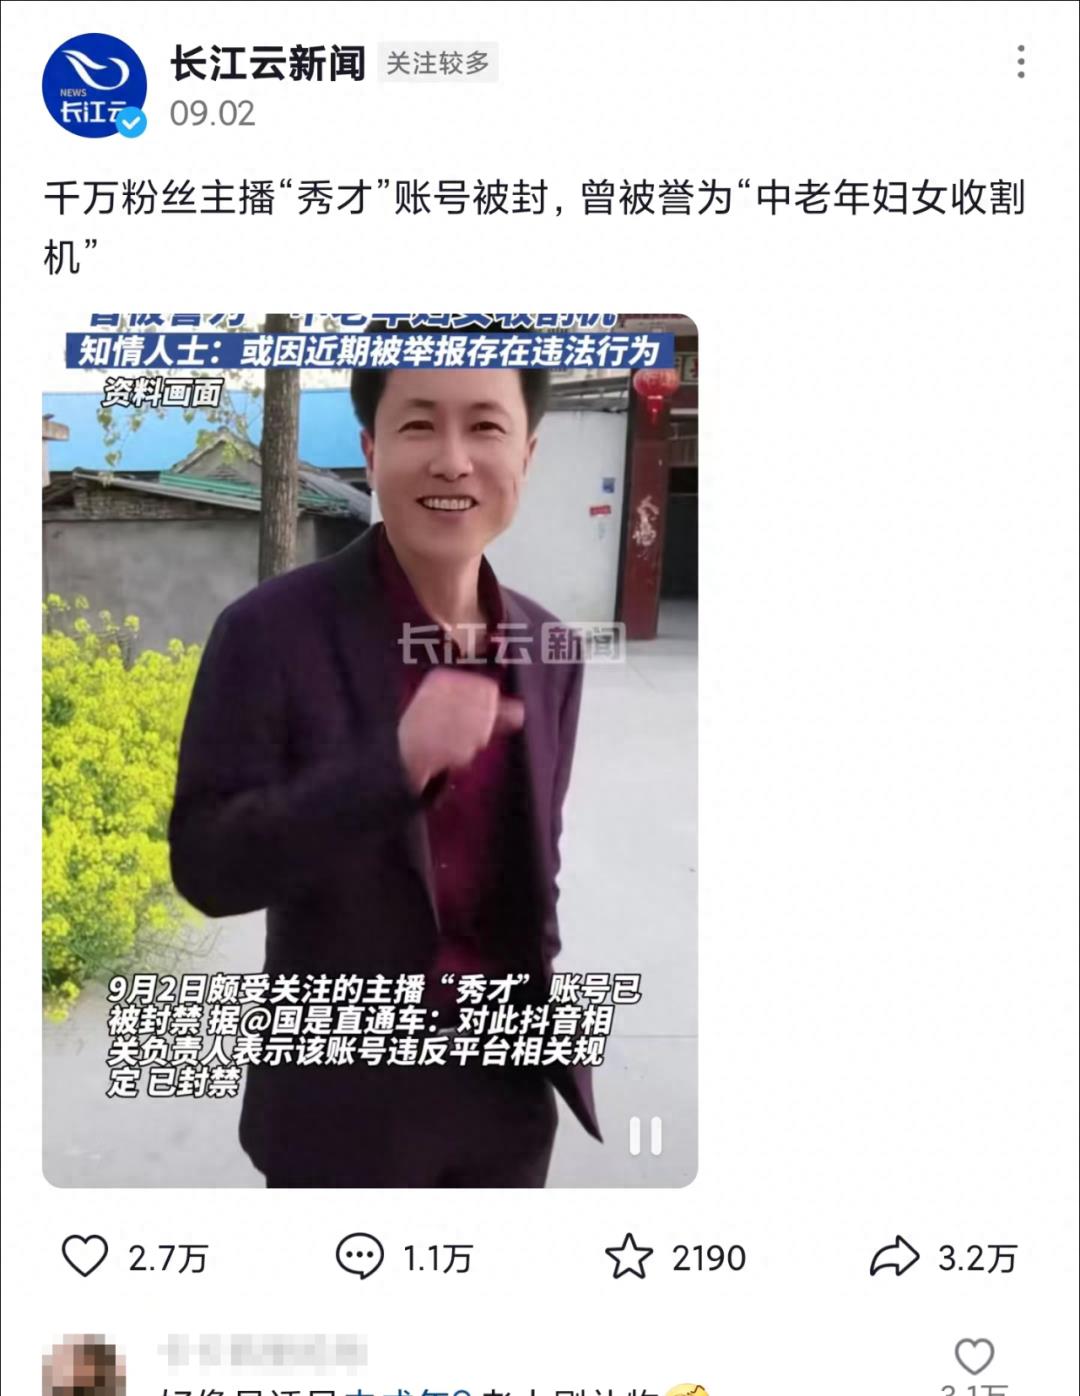 央视怒批“迈开腿往里面怼来怼去的视频”-FT中文网